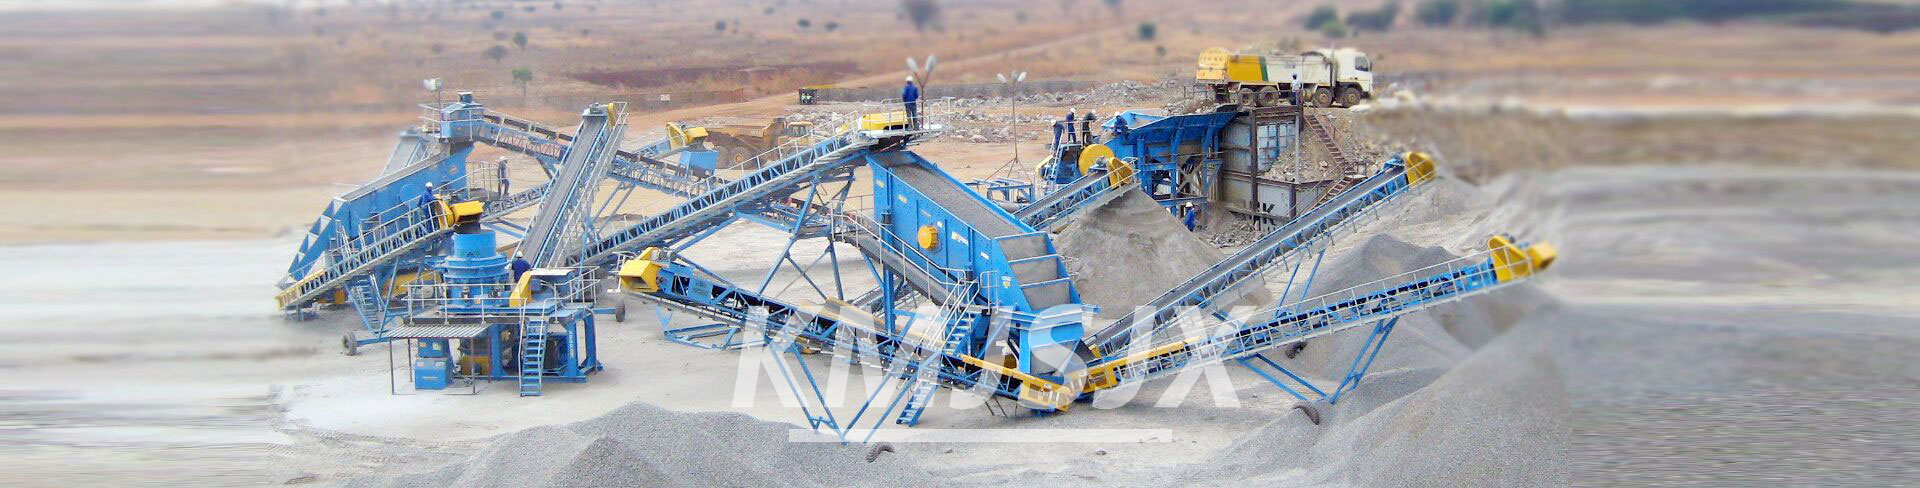 坚石机械专业的矿山设备生产企业